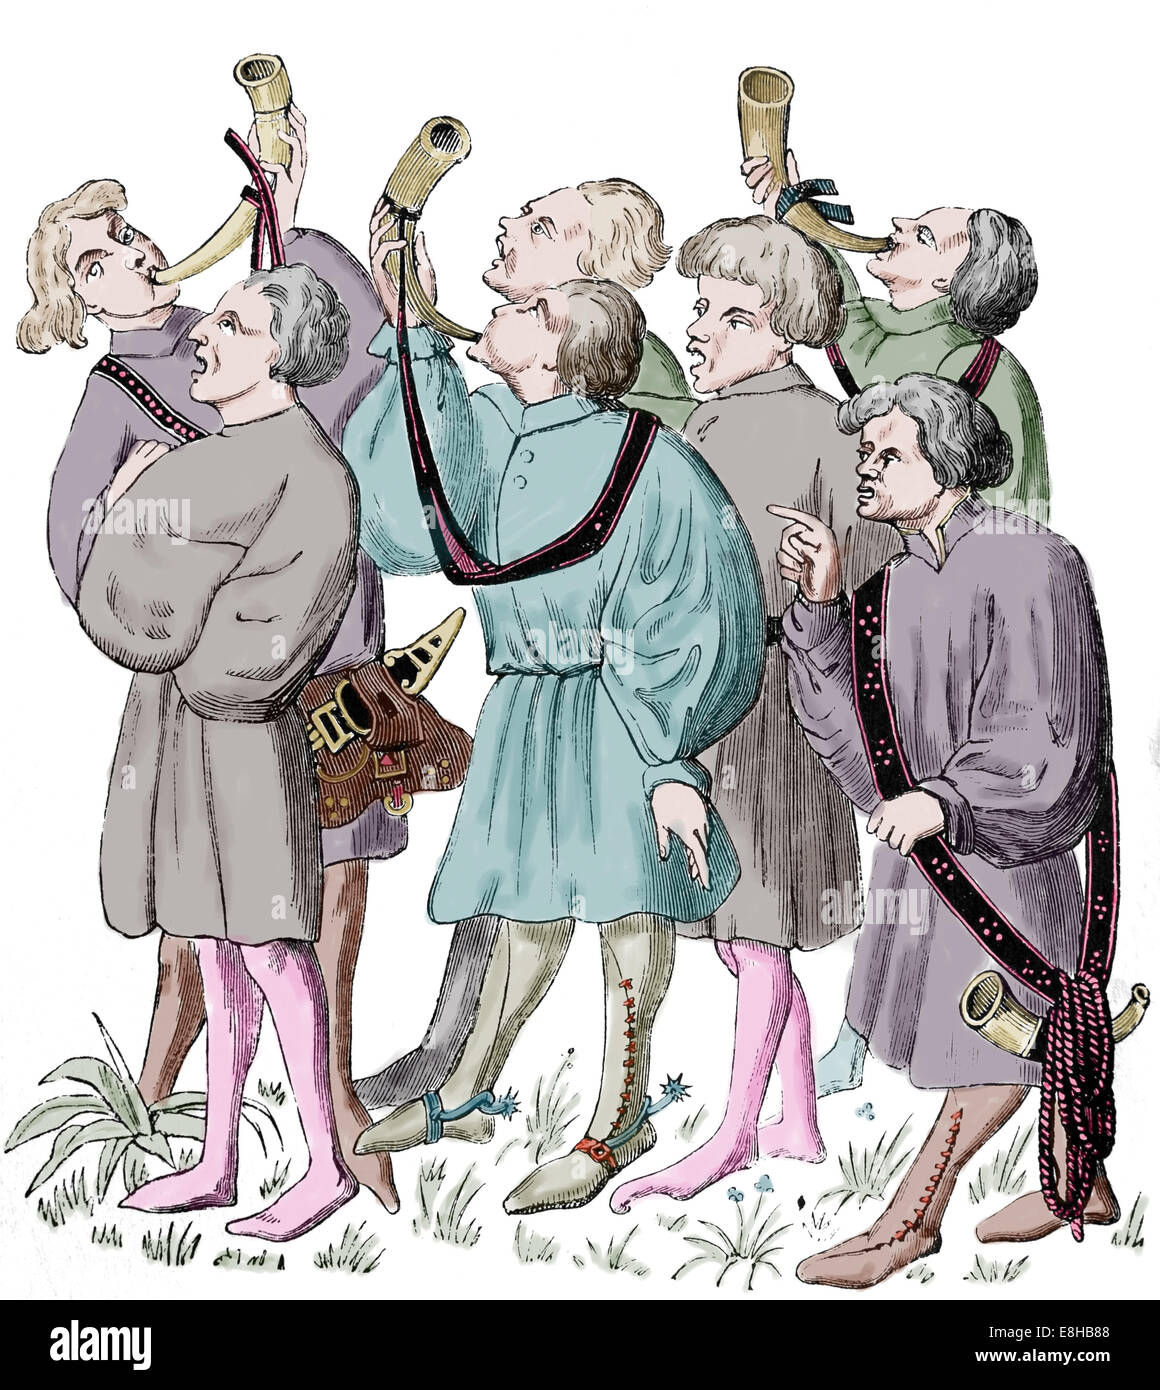 Comment crier et souffler de cornes. Facsimil. Le manuscrit de manuel de la chasse de Gaston Phoebus (15e siècle). Gravure.Couleur. Banque D'Images